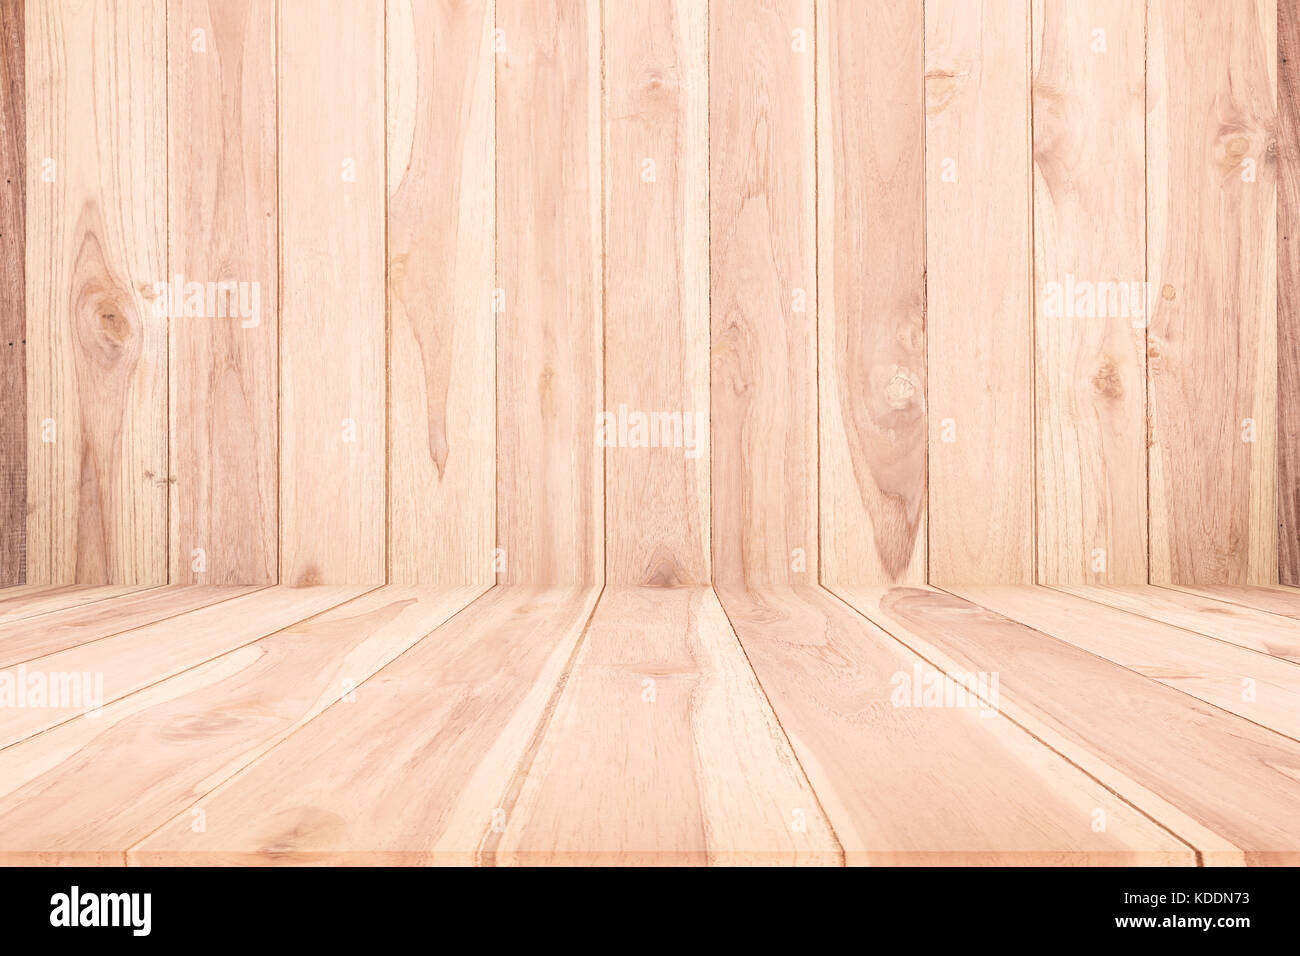 Holz Textur Hintergrund, Holzboden agent Holz Wand für Design Stockfoto